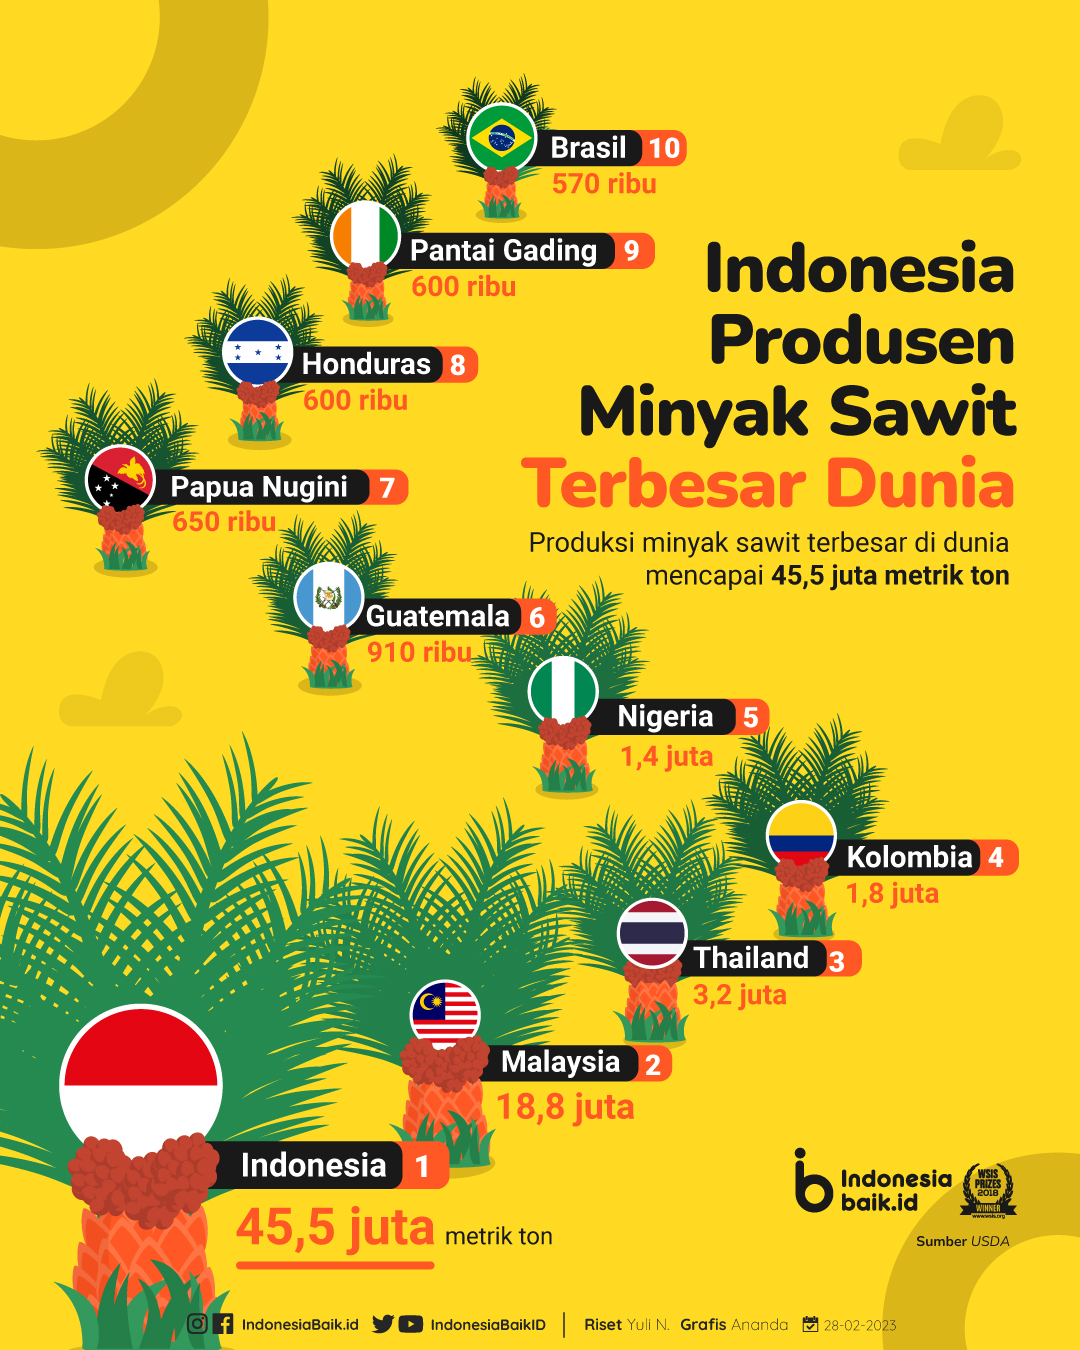 Indonesia negara penghasil minyak sawit terbesar di dunia